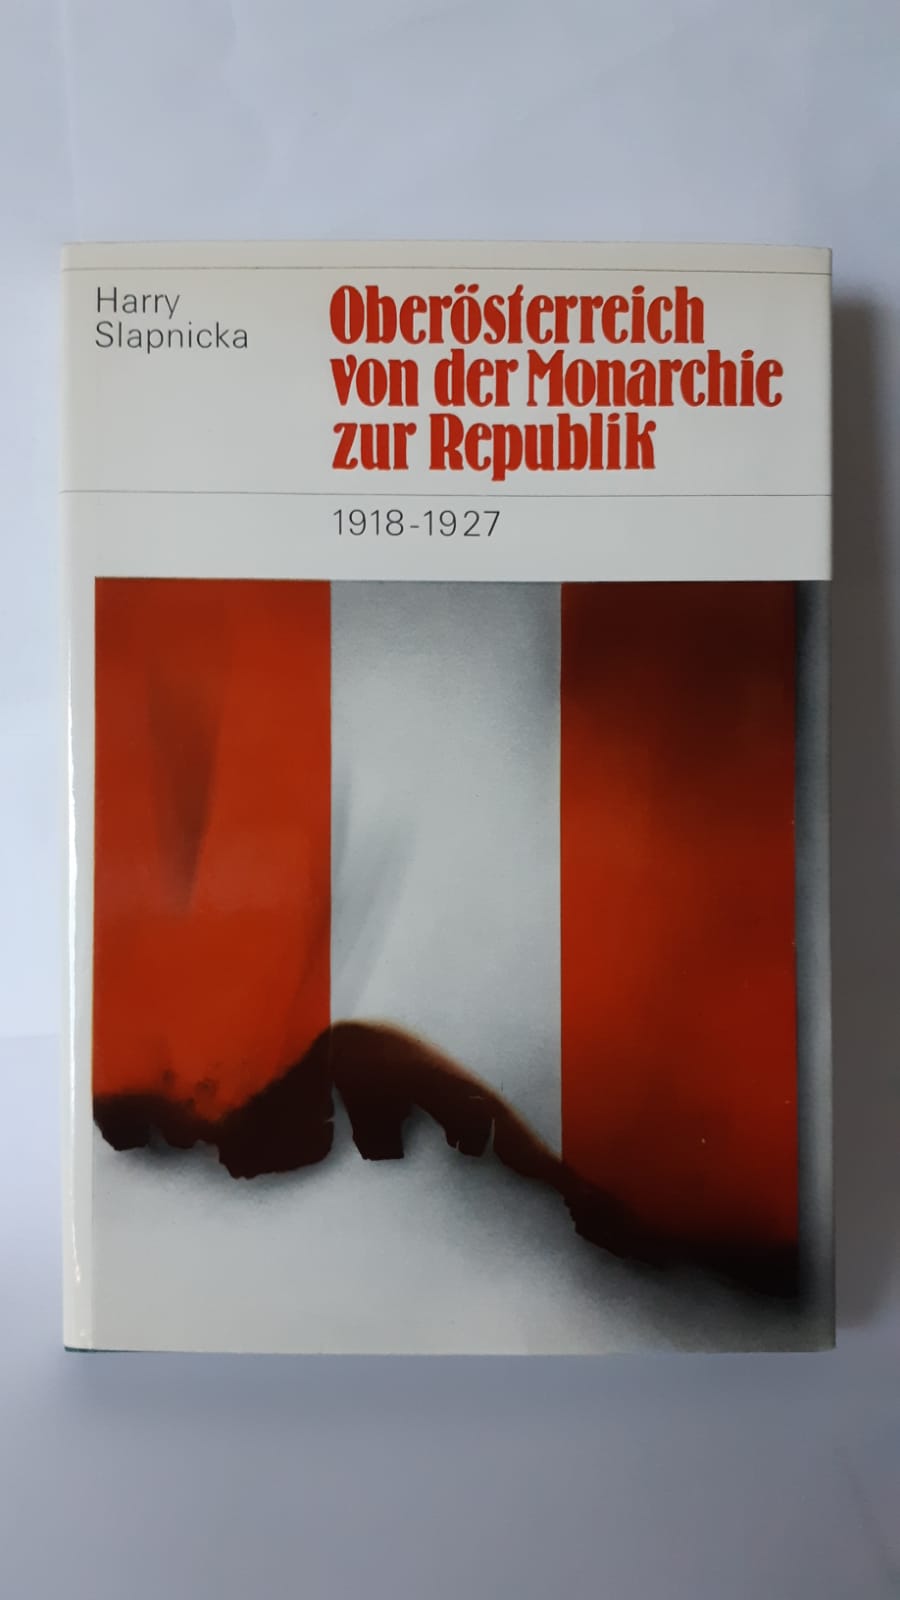 Oberösterreich - von der Monarchie zur Republik. 1918-1927. Beiträge zur Zeitgeschichte Oberösterreichs 1. Hrsg. vom OÖ Landesarchiv. - Slapnicka, Harry